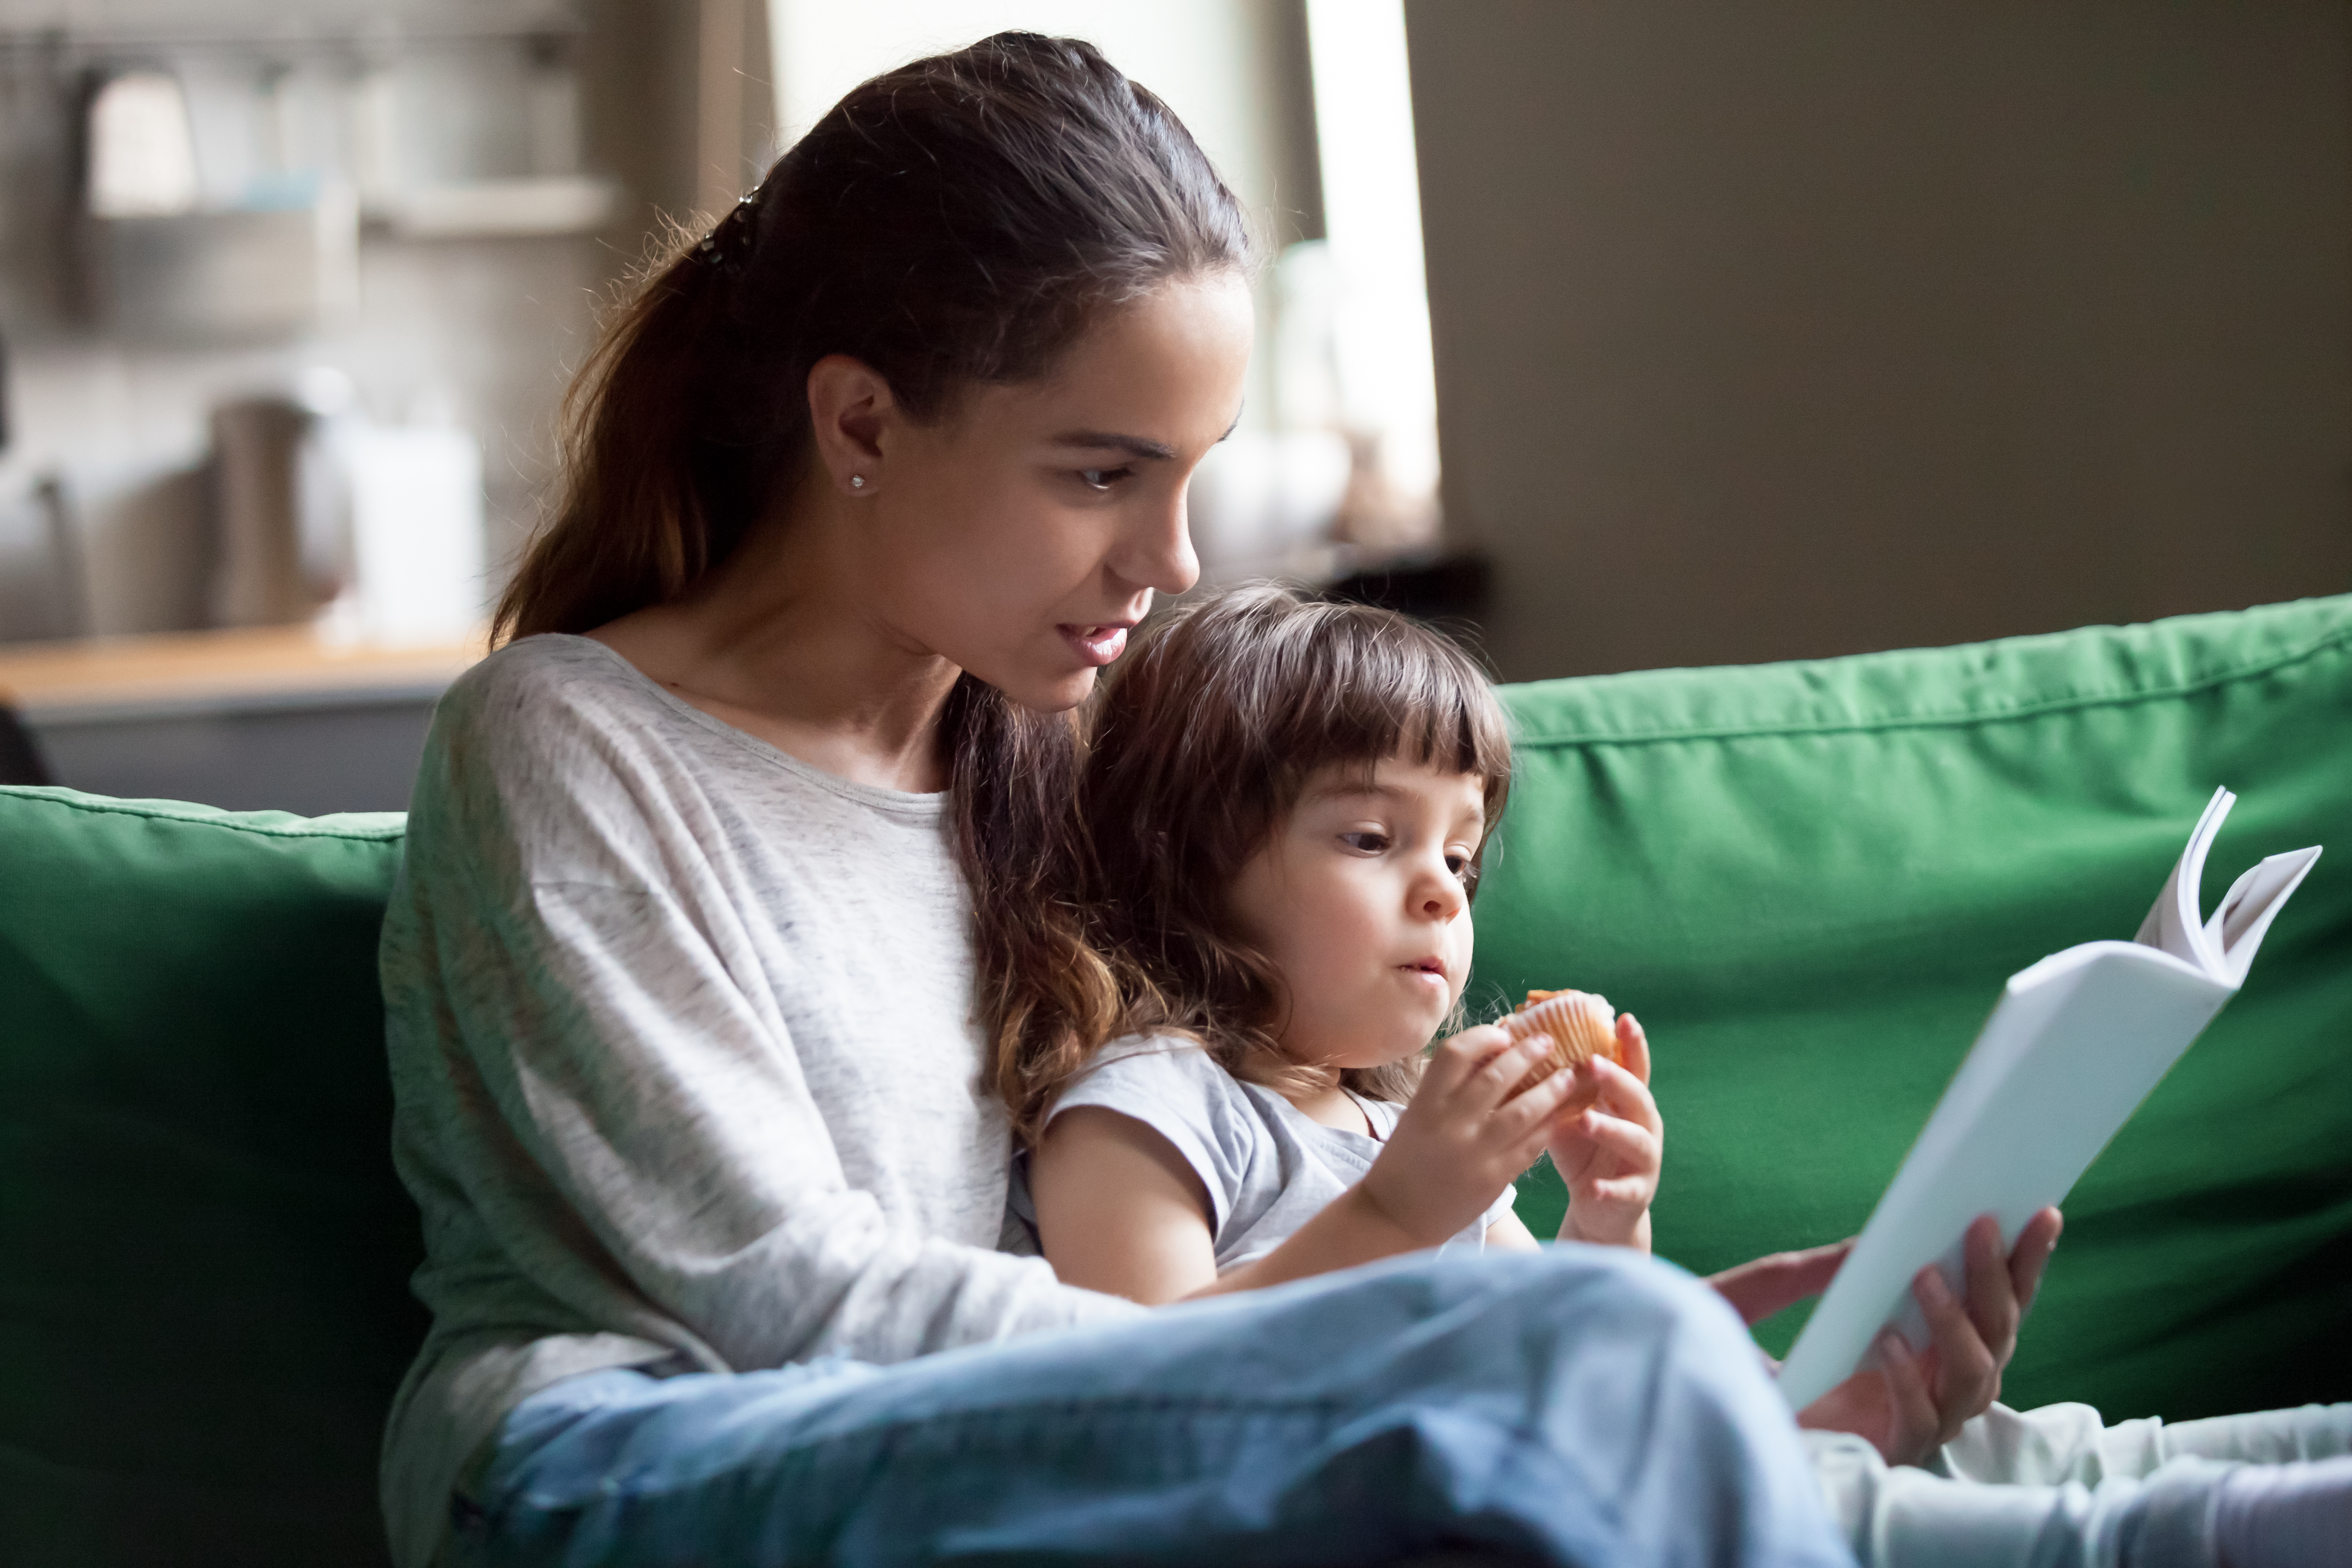 Mulher jovem lendo um livro com uma menina | Fonte: Shutterstock